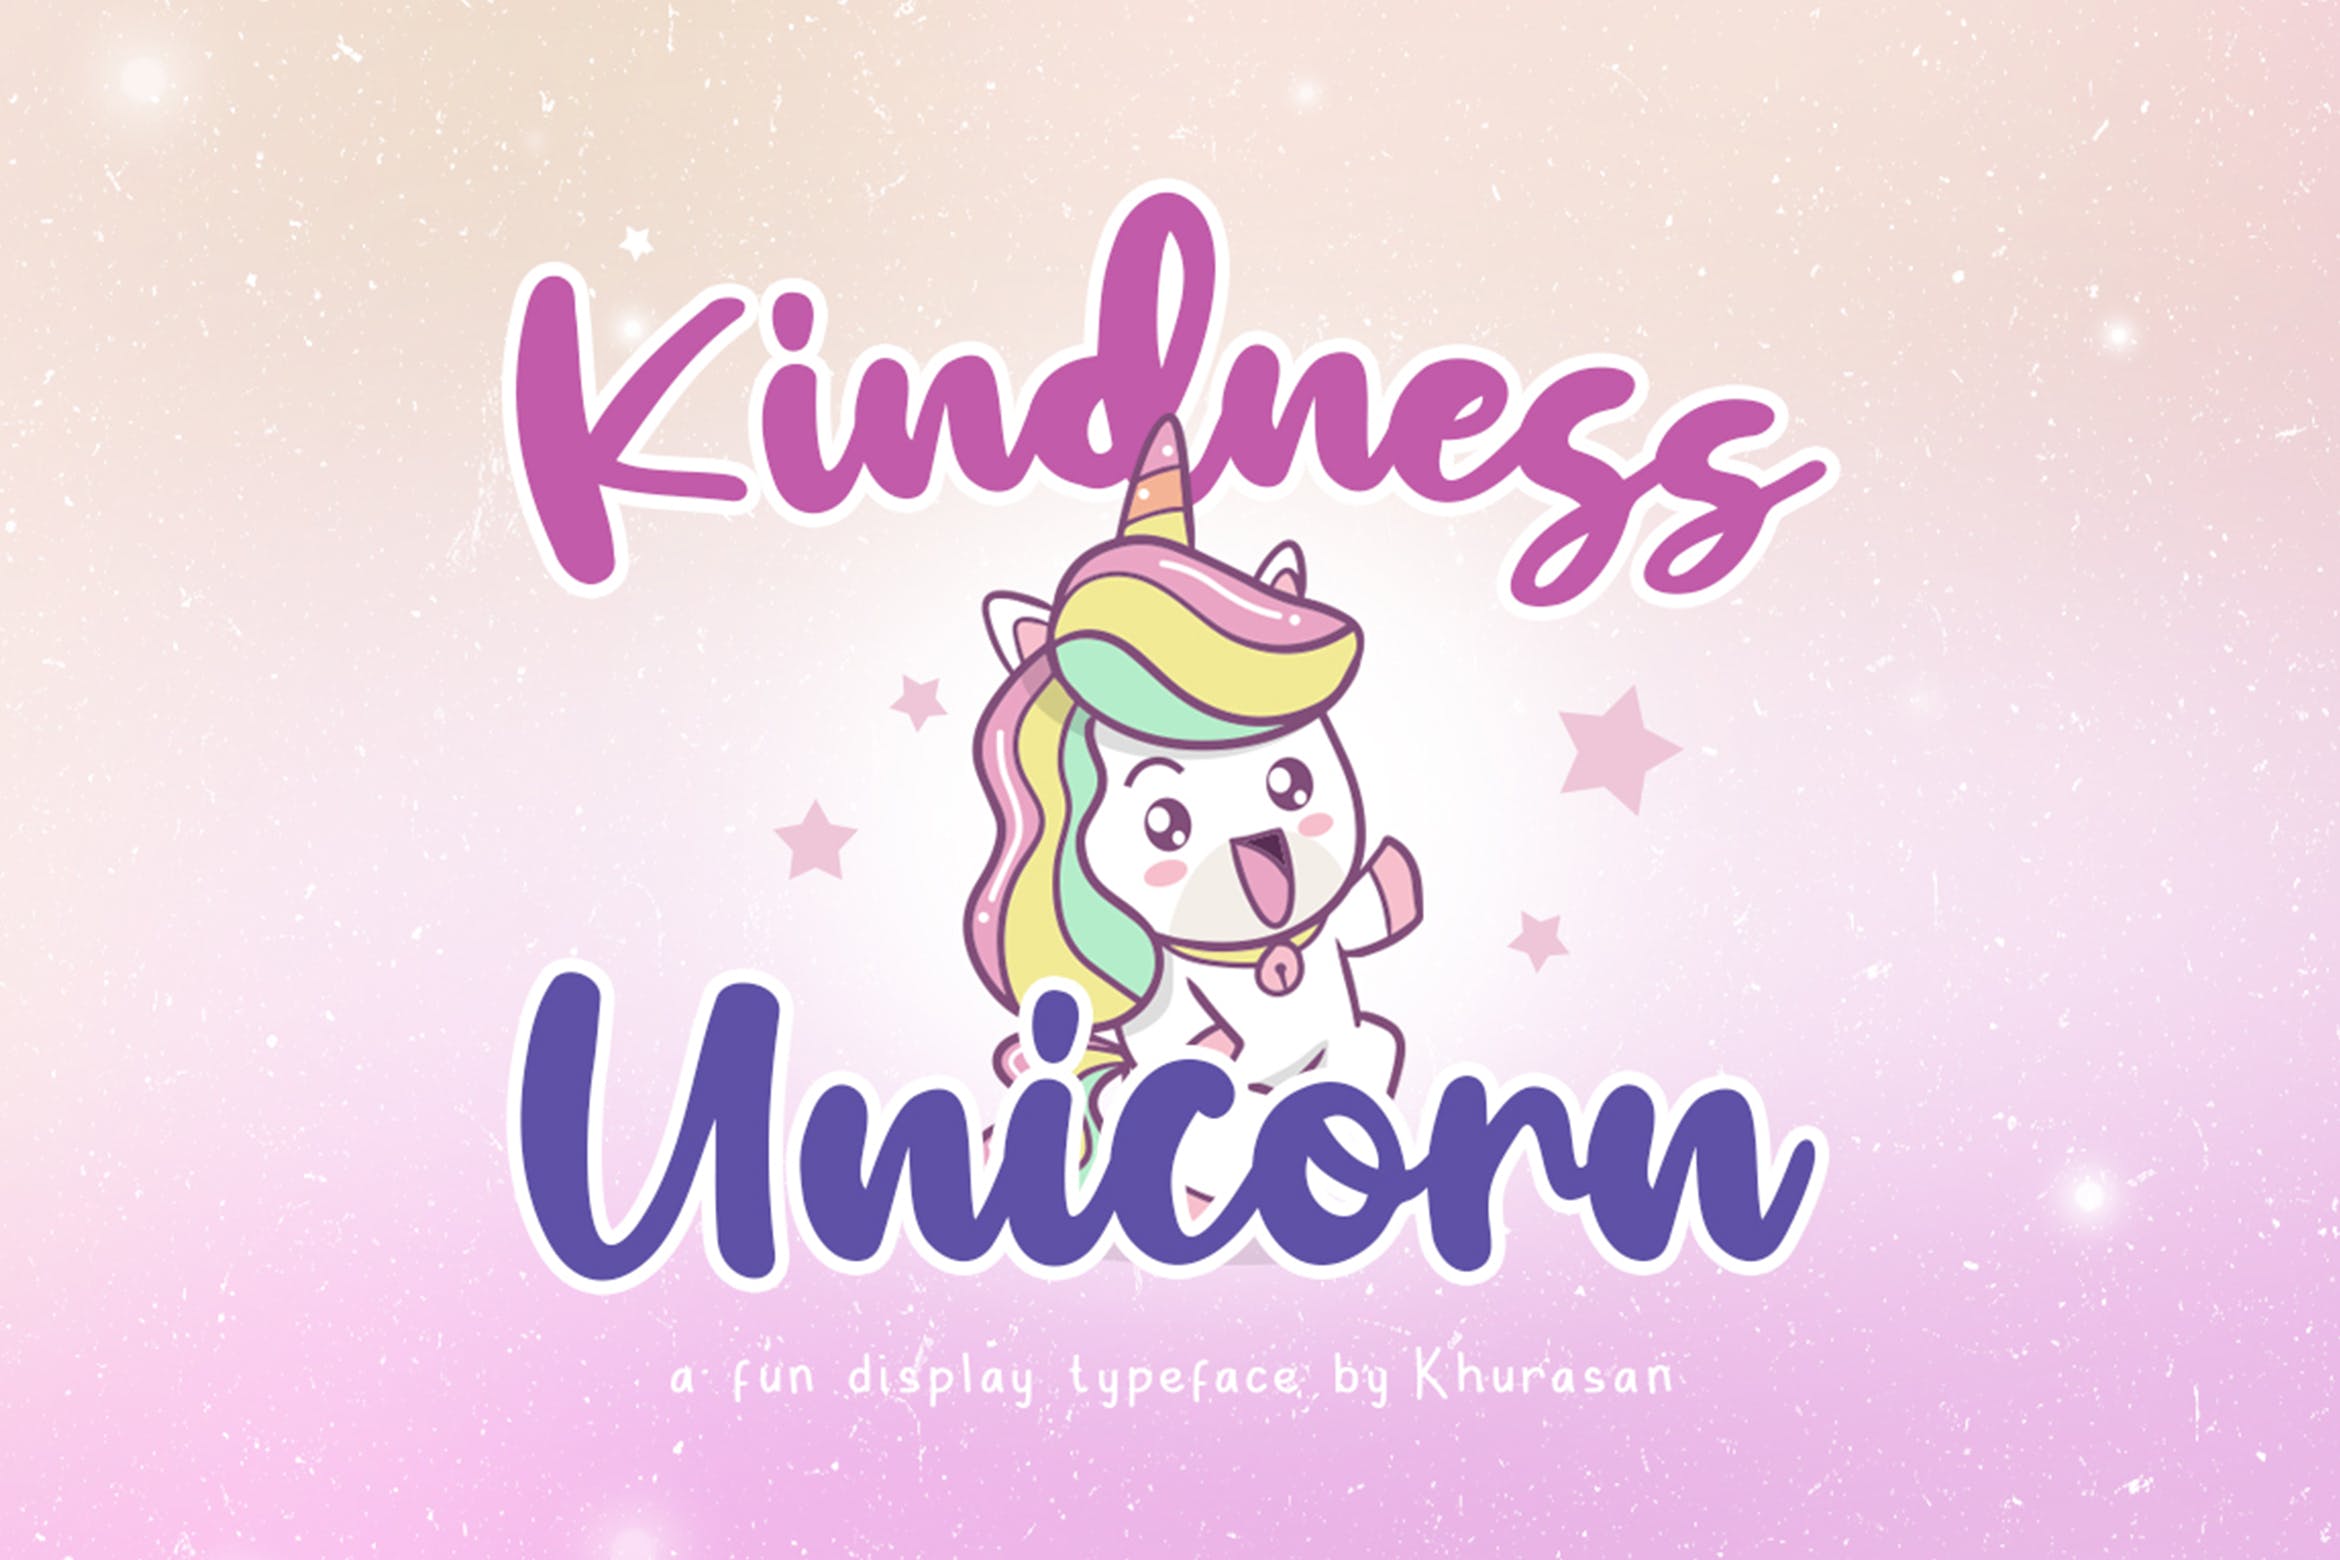 有趣大胆的英文儿童书法字体 Kindness Unicorn插图